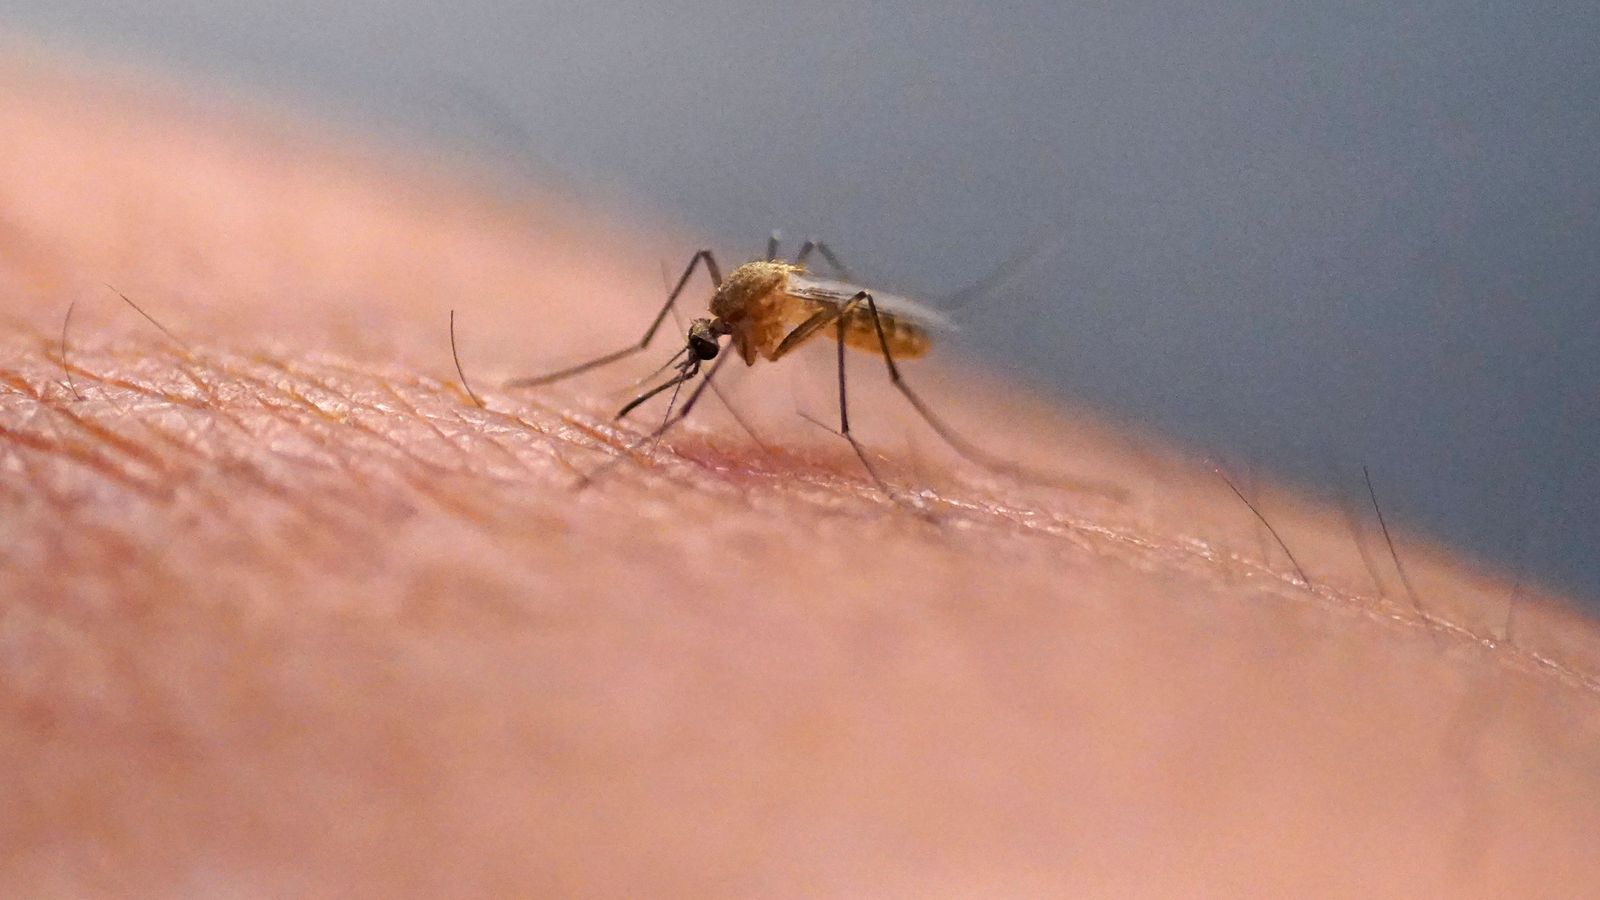 Plus de la moitié de la population mondiale pourrait être exposée à des maladies transmises par les moustiques, préviennent les experts |  Actualités scientifiques et technologiques